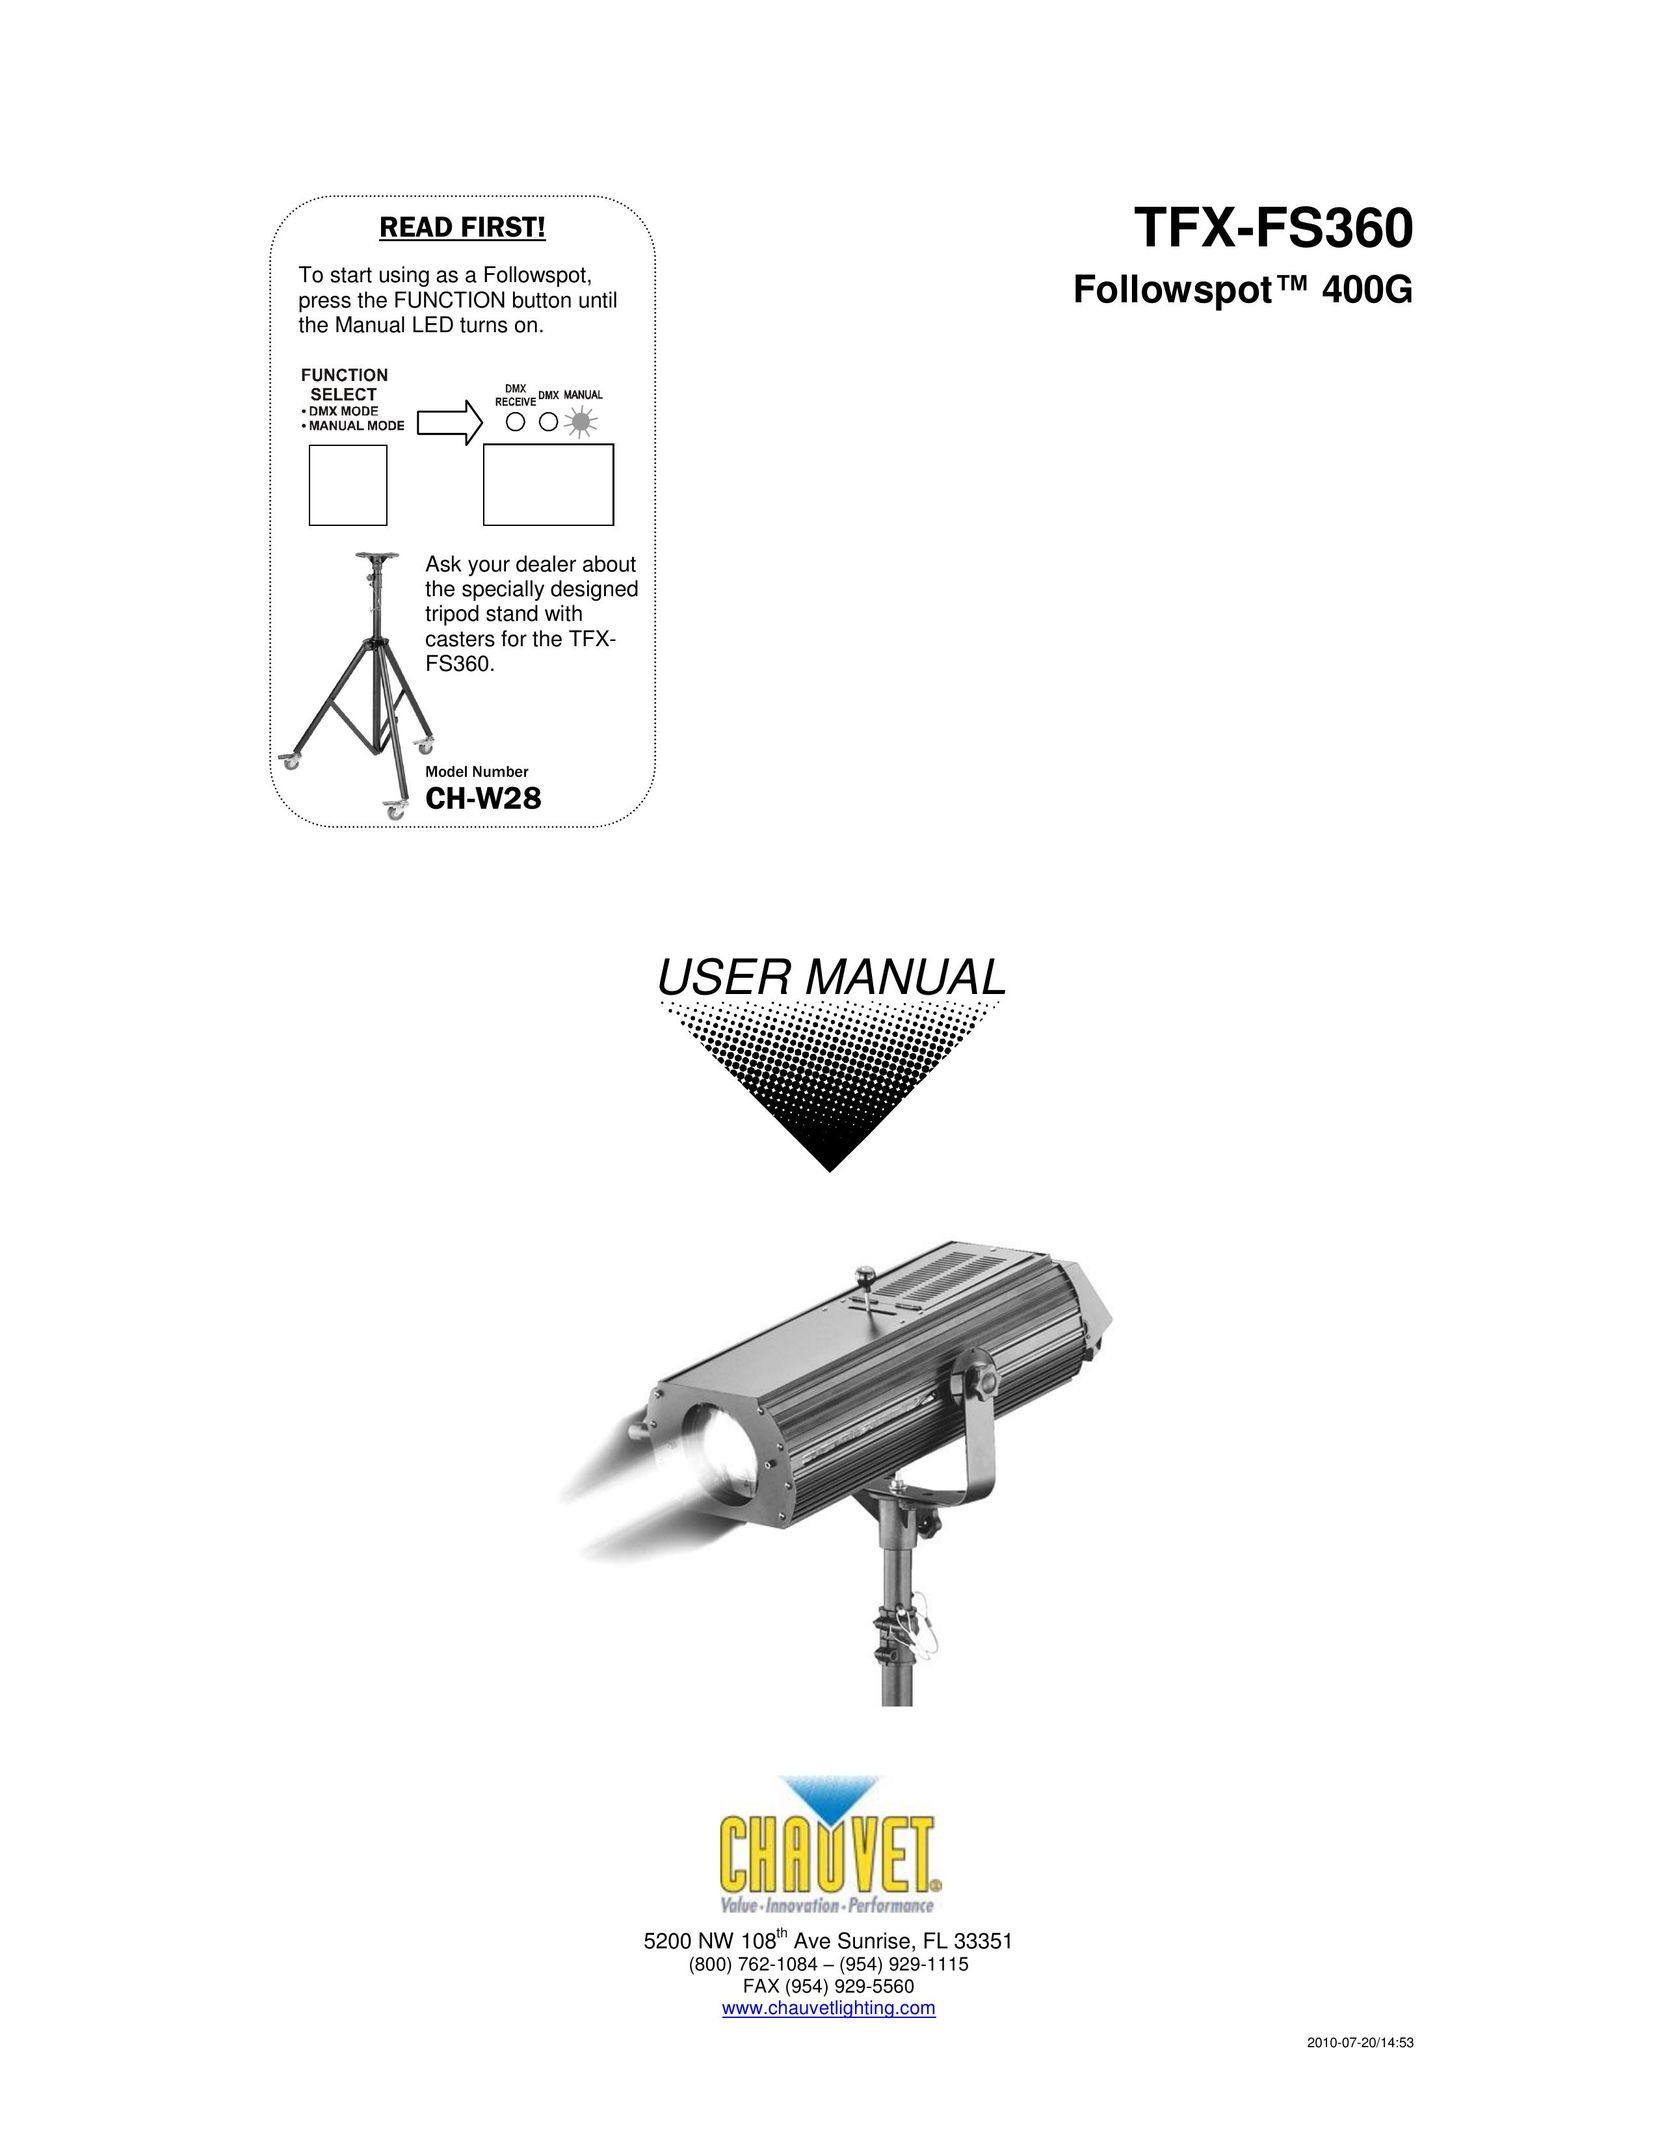 Chauvet TFX-FS360 Work Light User Manual